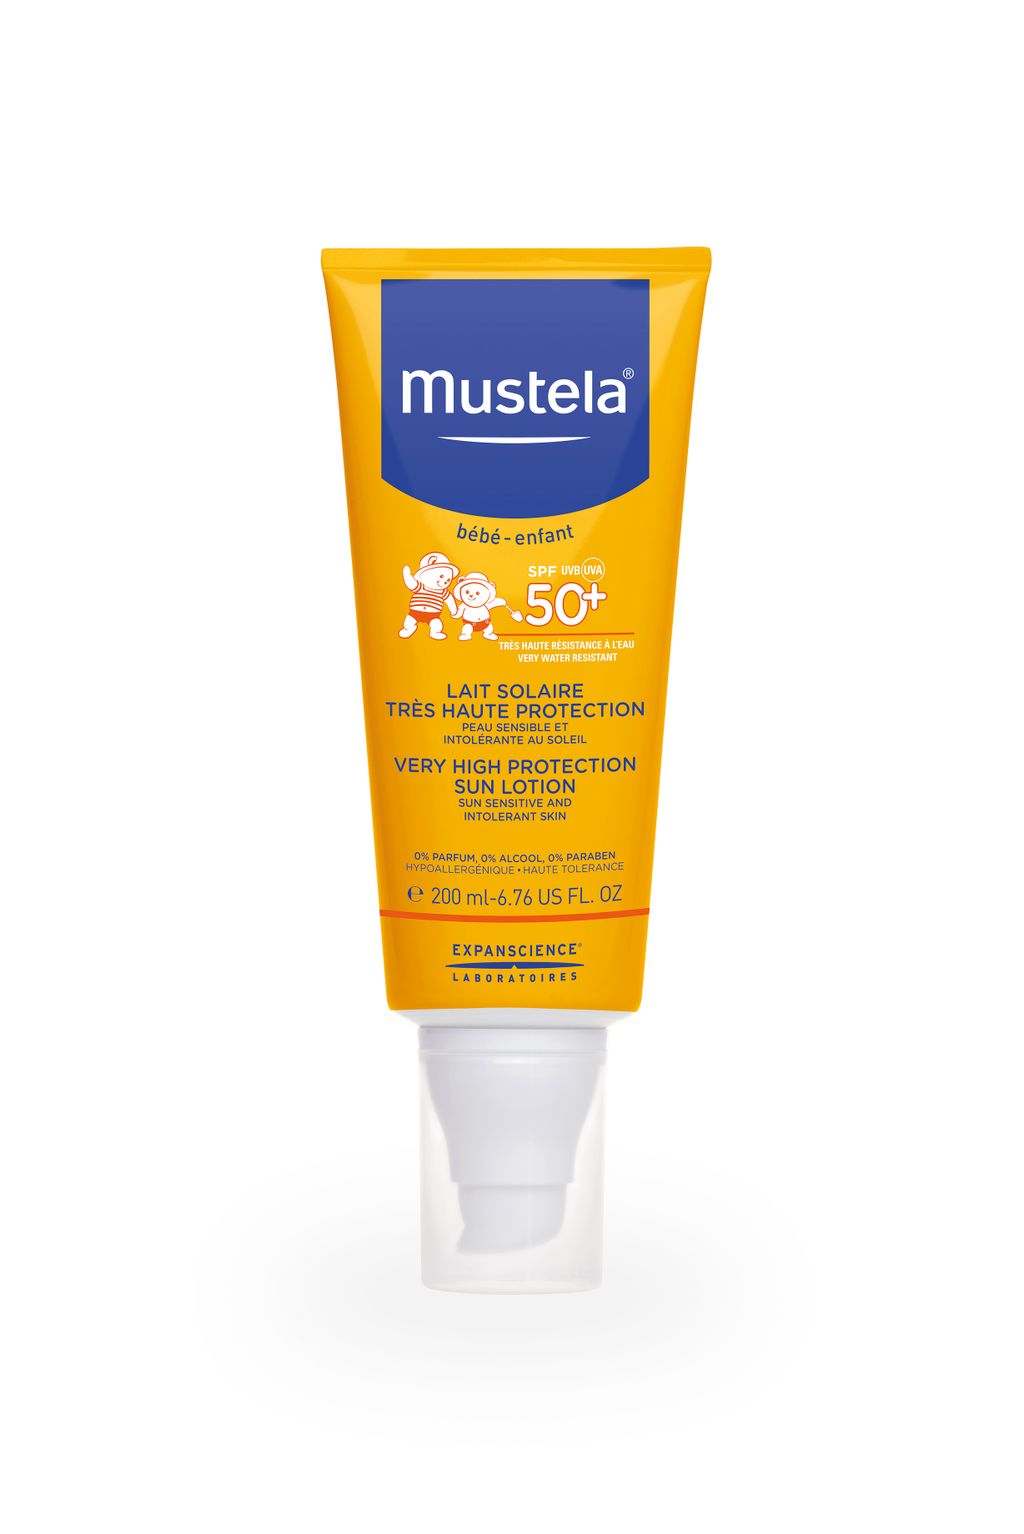 фото упаковки Mustela Sun Солнцезащитное молочко для детей SPF-50+